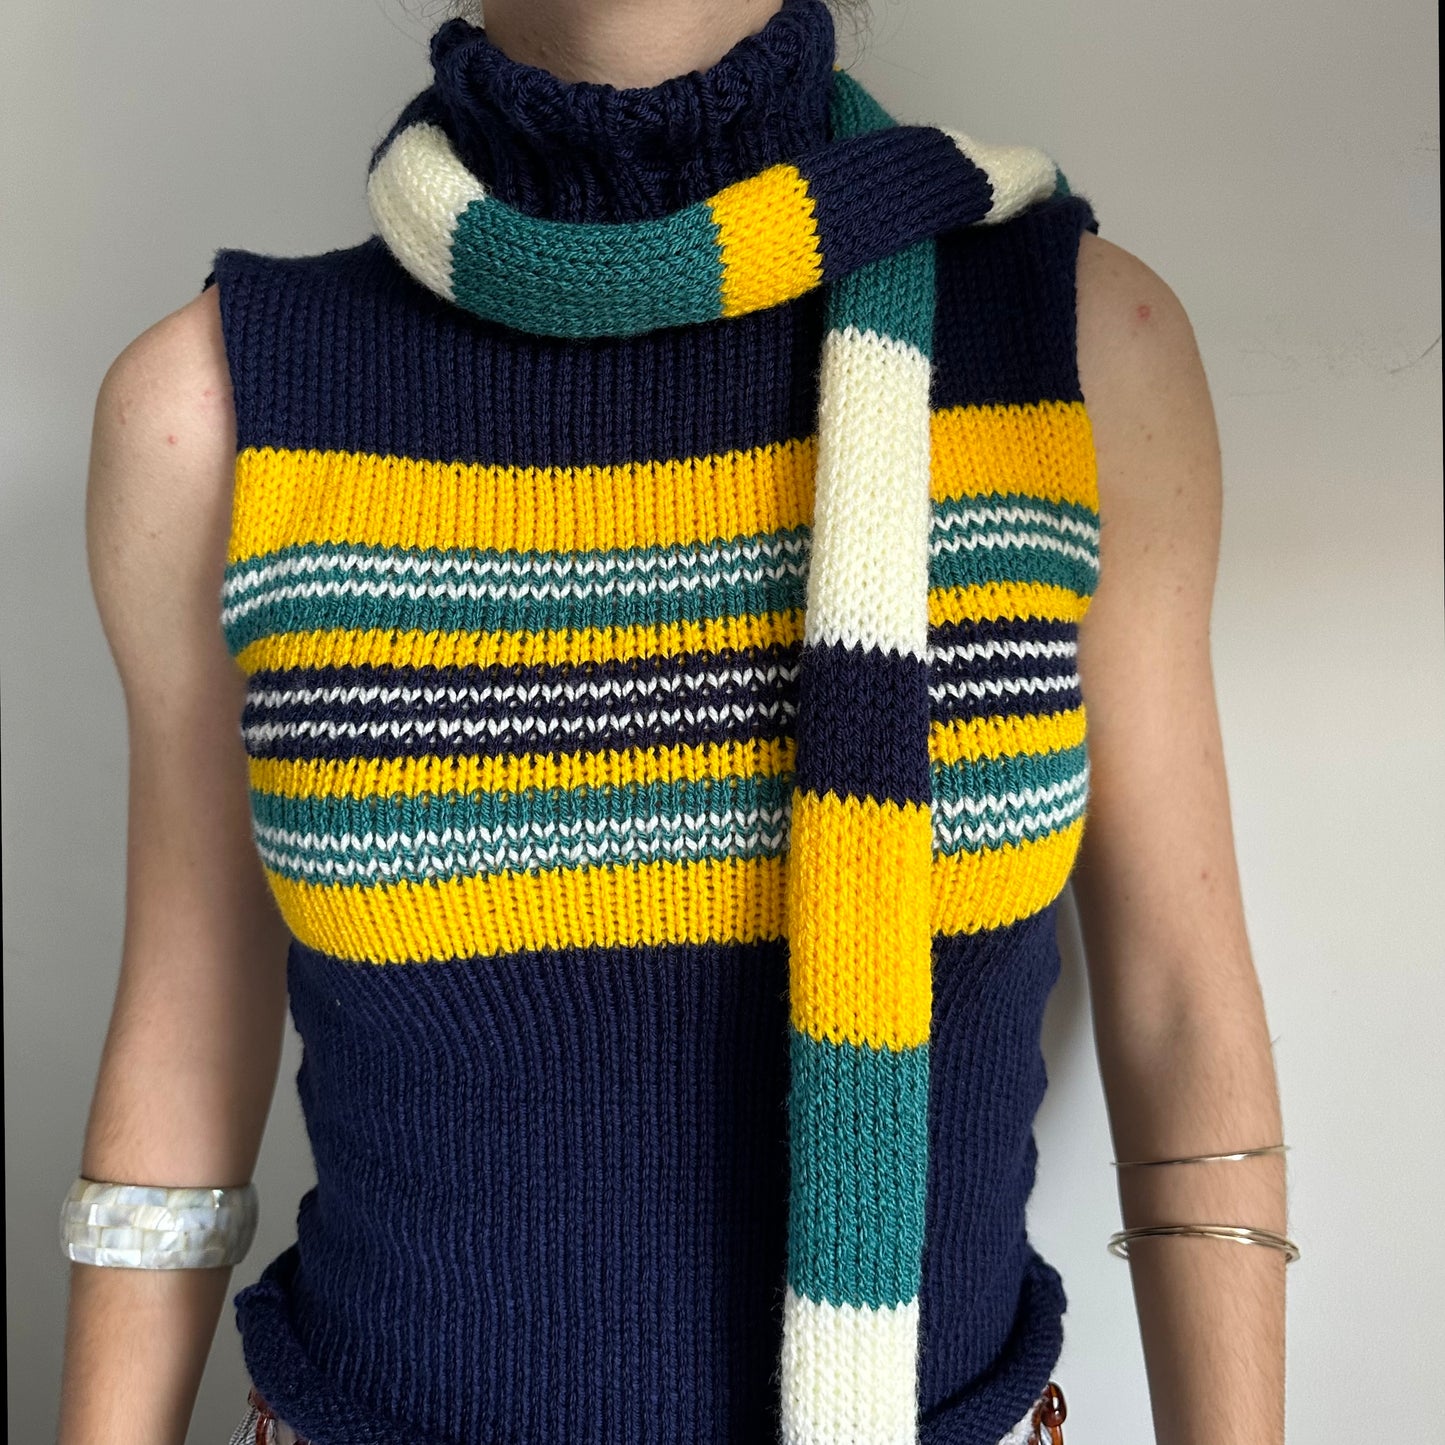 The Nova Vest - striped turtleneck knit vest